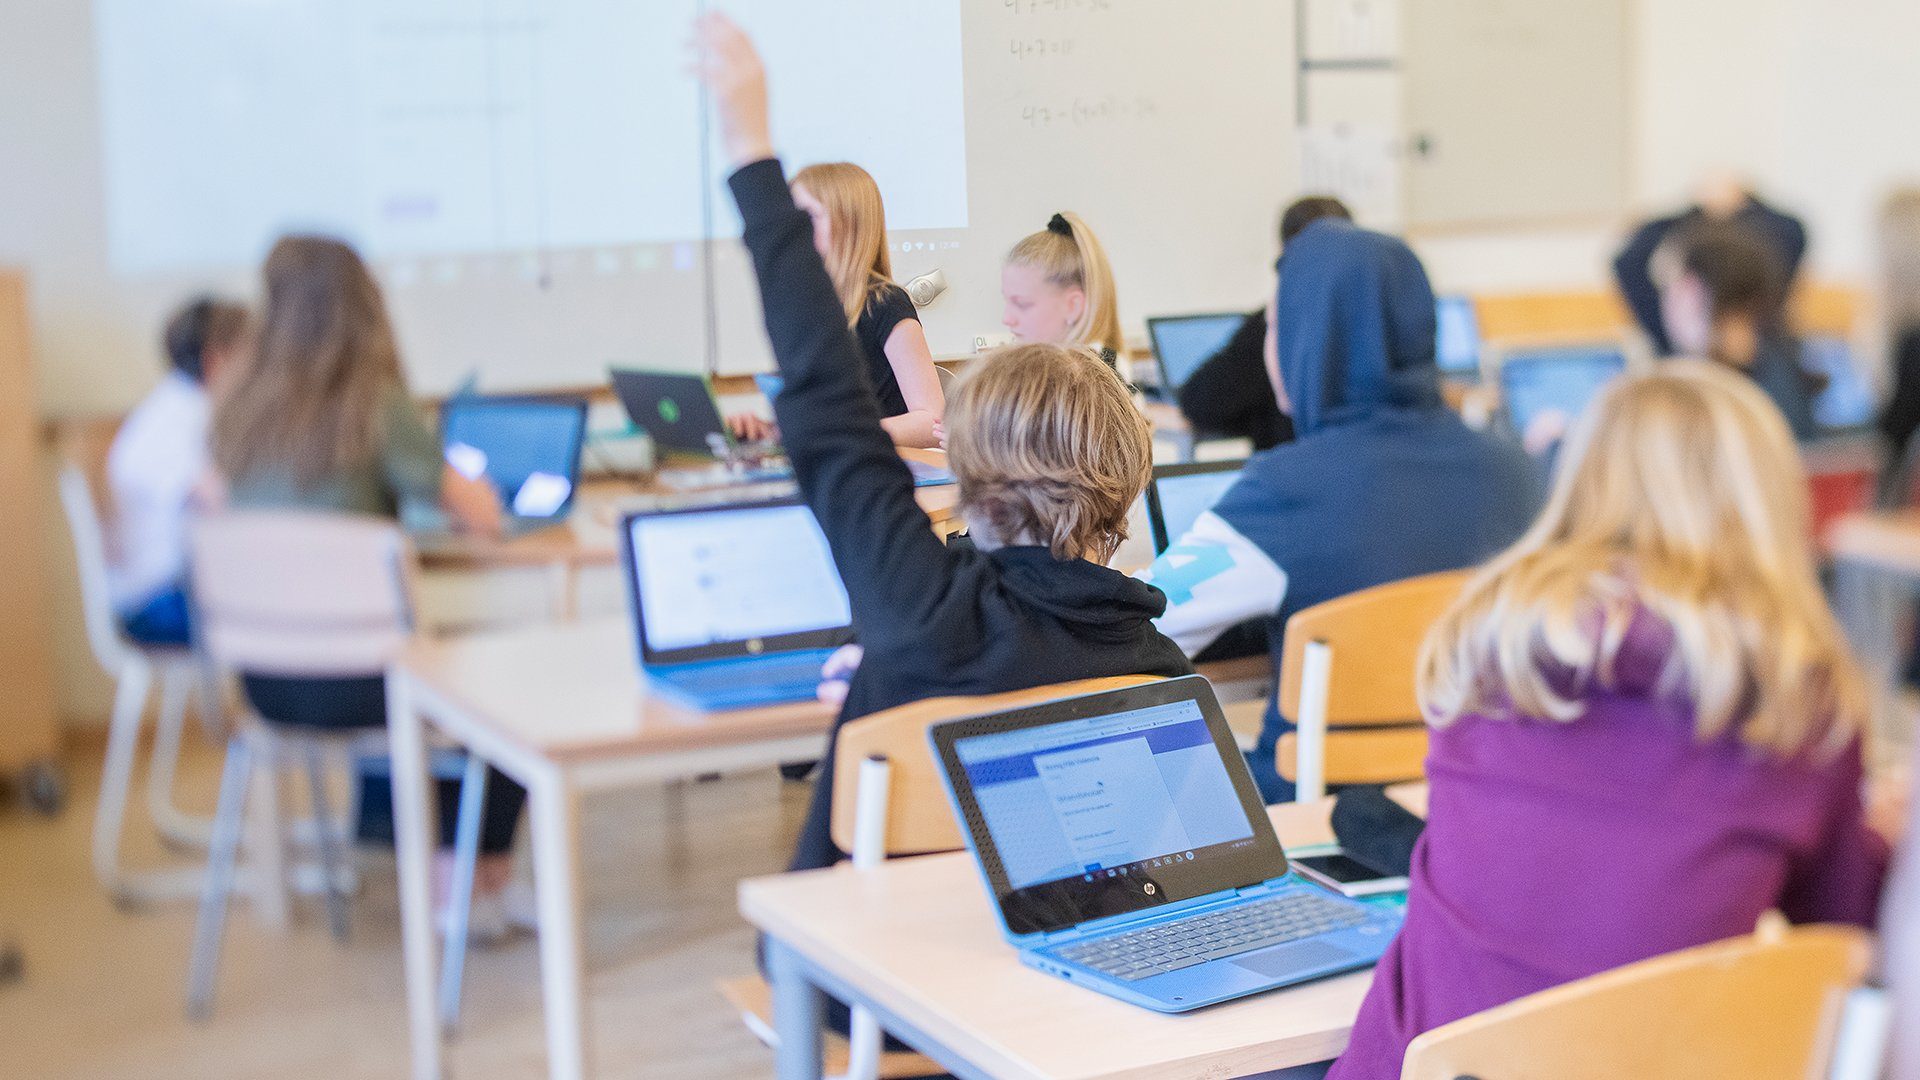 Klassrum där eleverna har laptops, en pojke räcker upp handen.